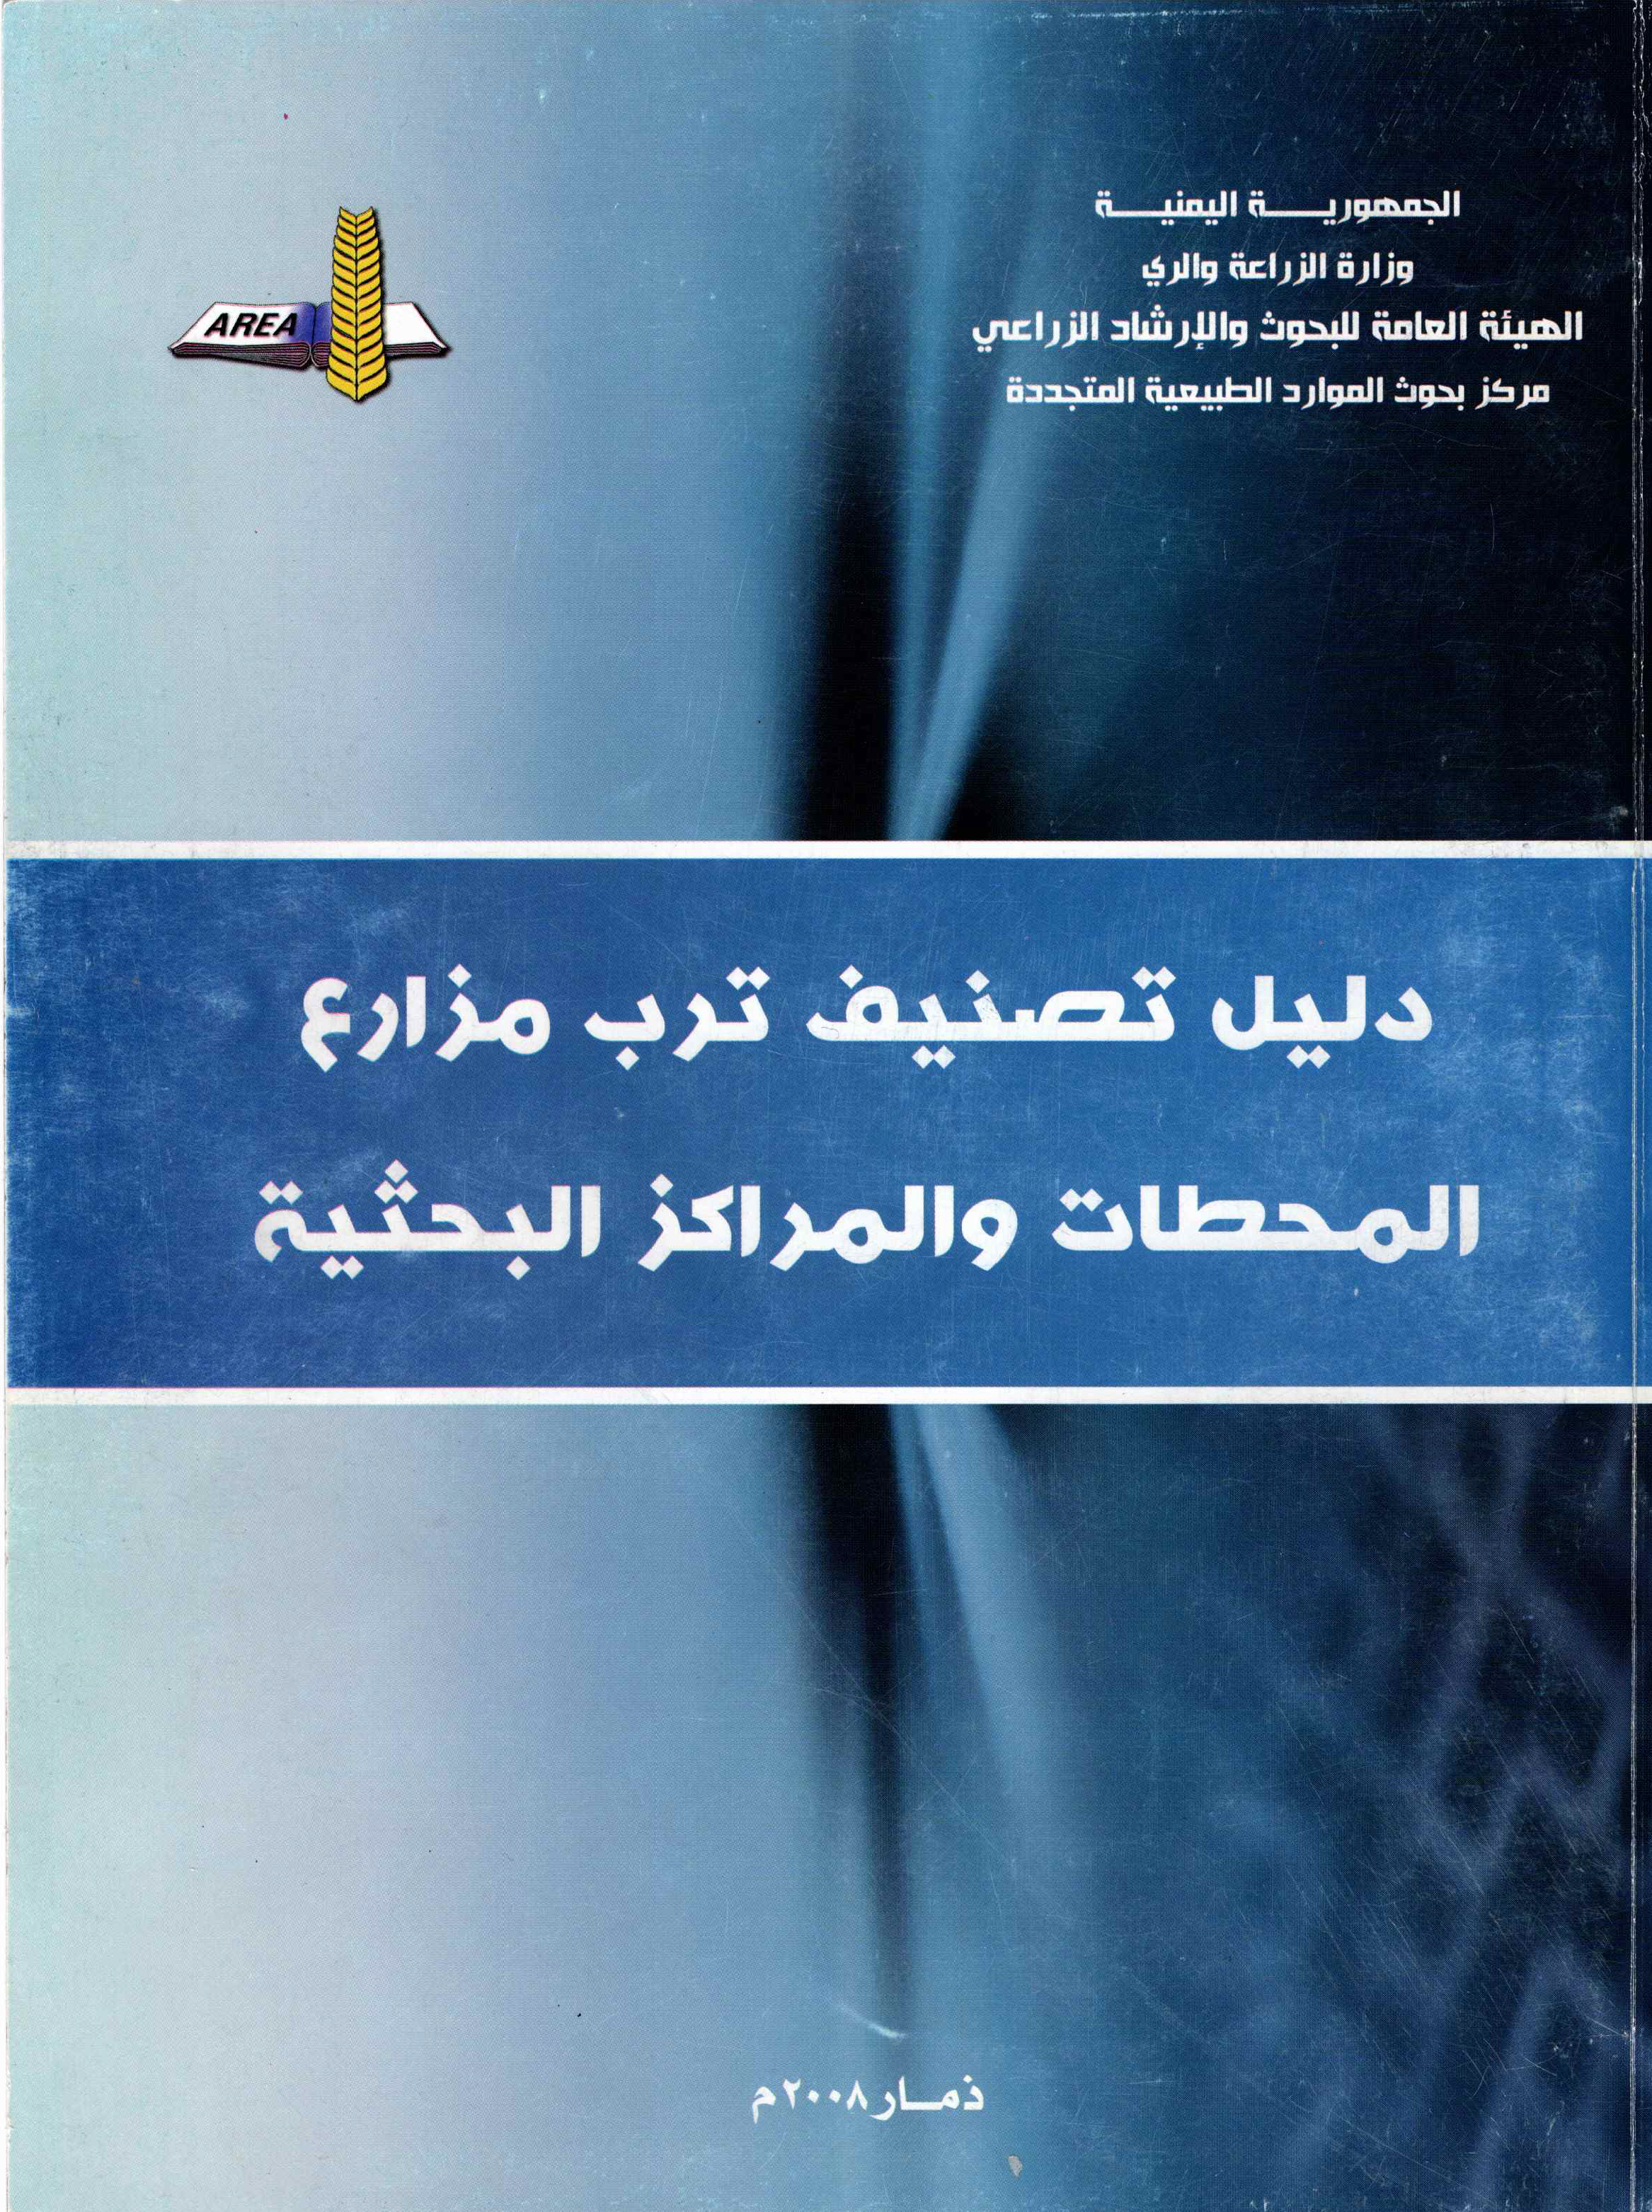 دليل تصنيف ترب مزارع المحطات والمراكز البحثية اليمنية 2008م